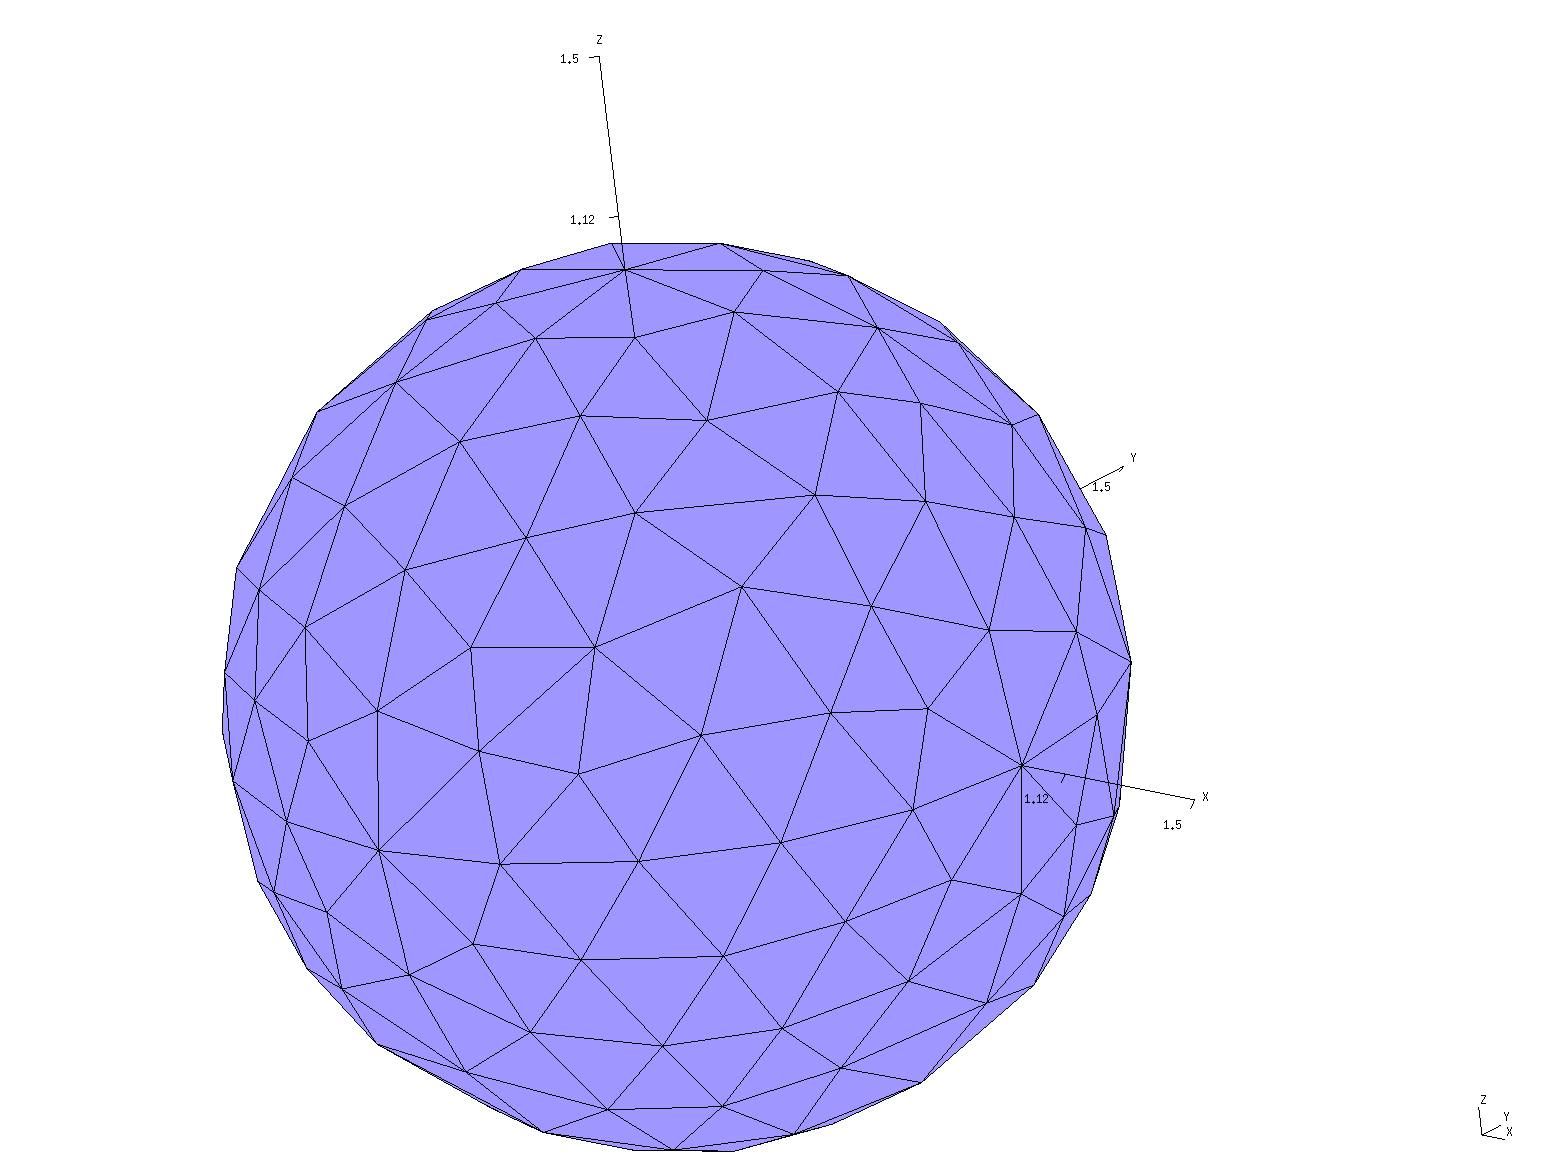 Sphere_501 mesh image